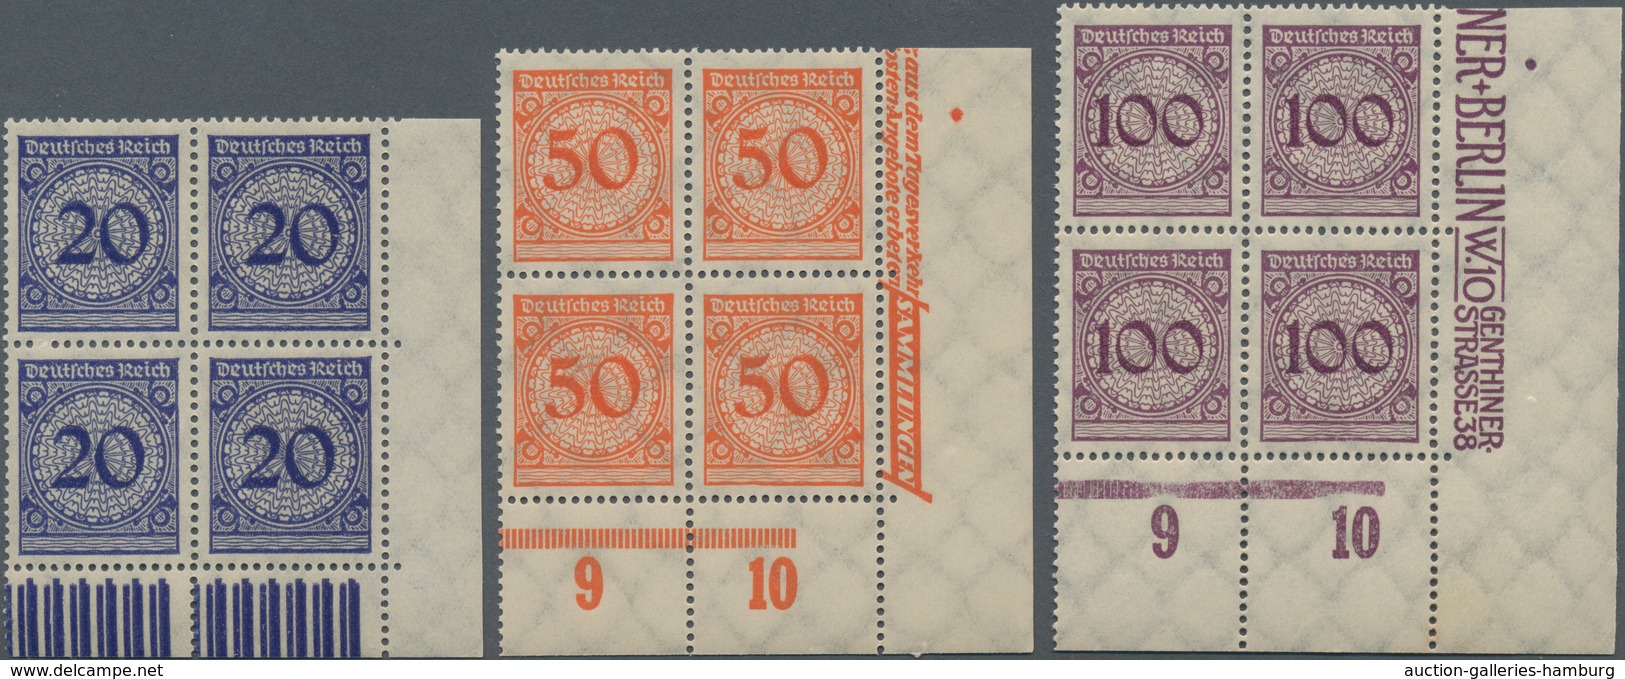 Deutsches Reich - Weimar: 1923, Freimarken Rentenpfennige 3 Pf Bis 100 Pf Im Luxus-Vierblocksatz, Ei - Unused Stamps